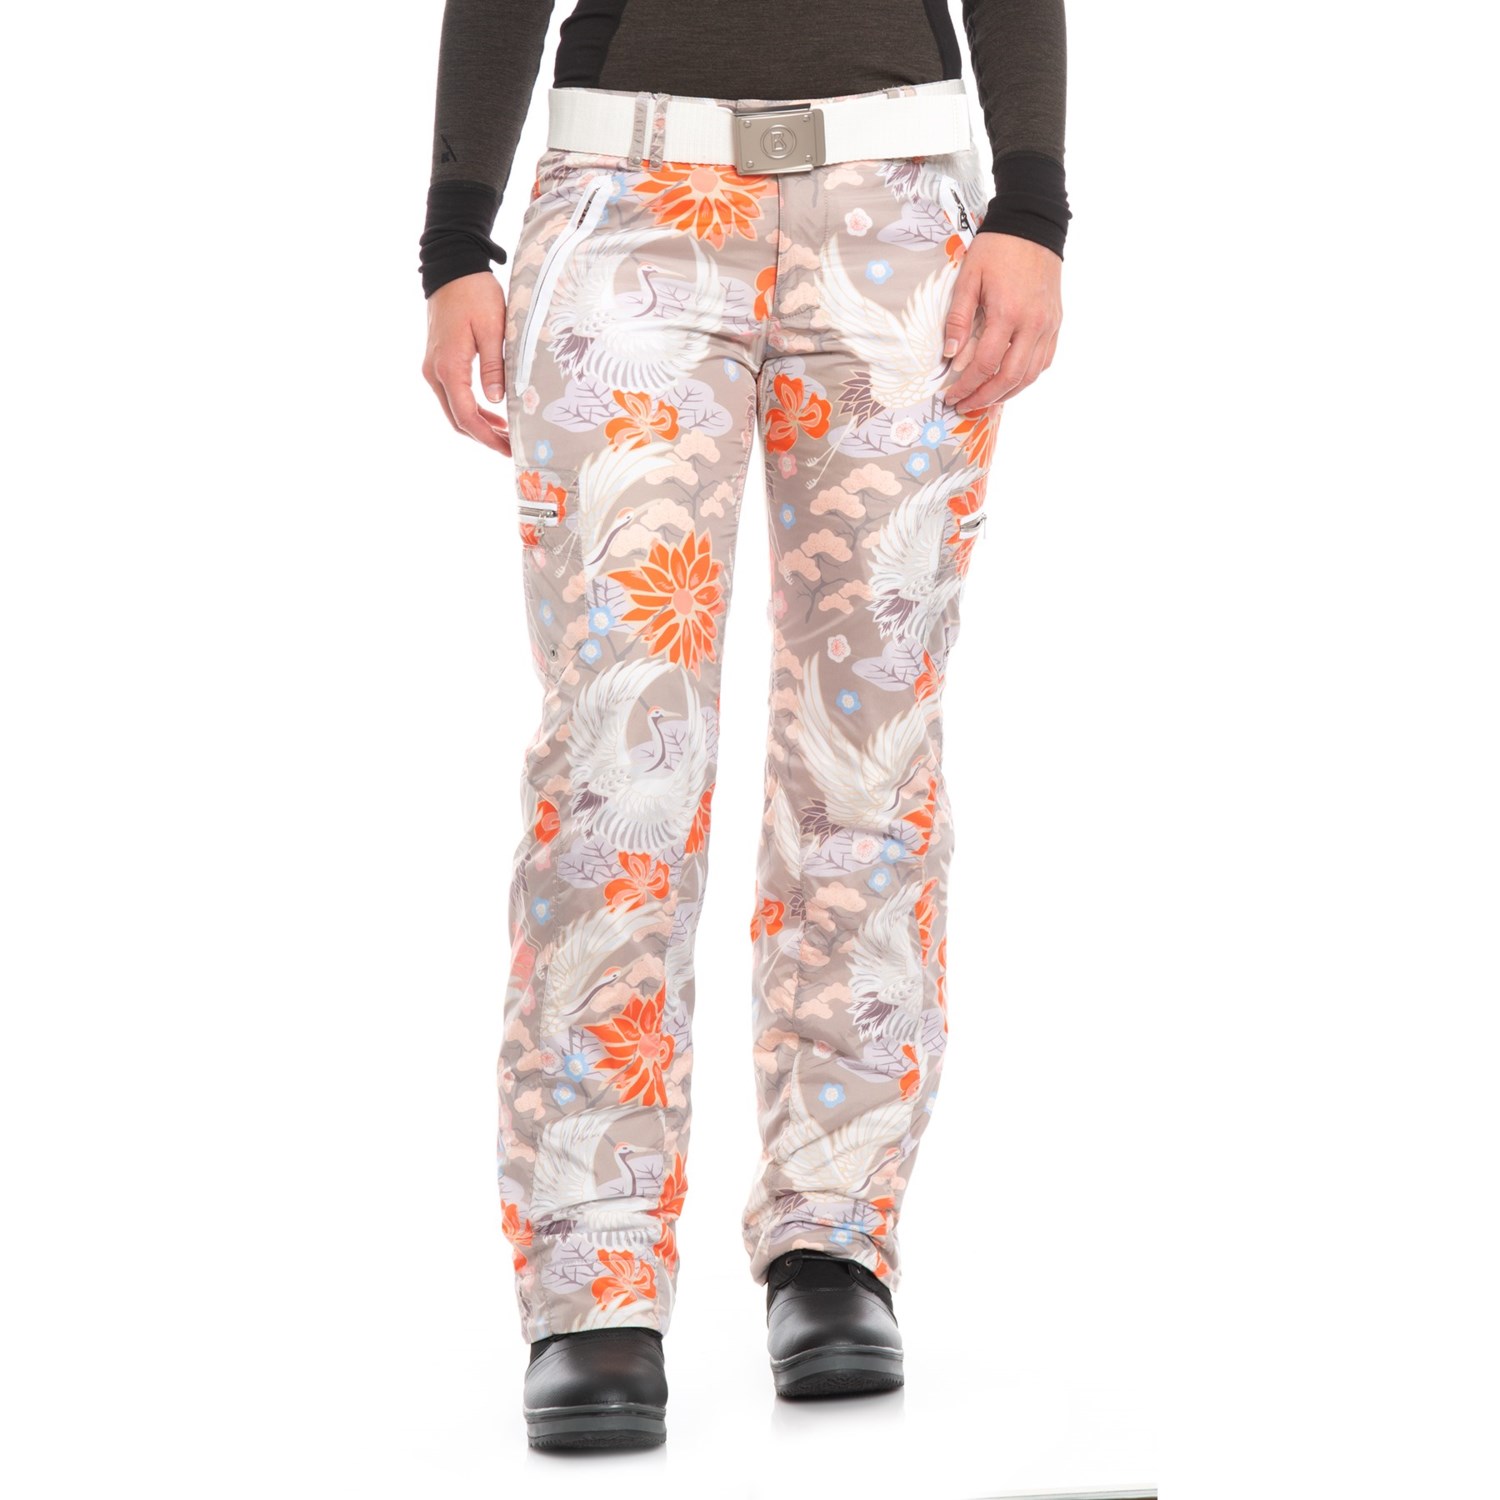 Bogner Terri Printed Ski Pants – Insulated (For Women)